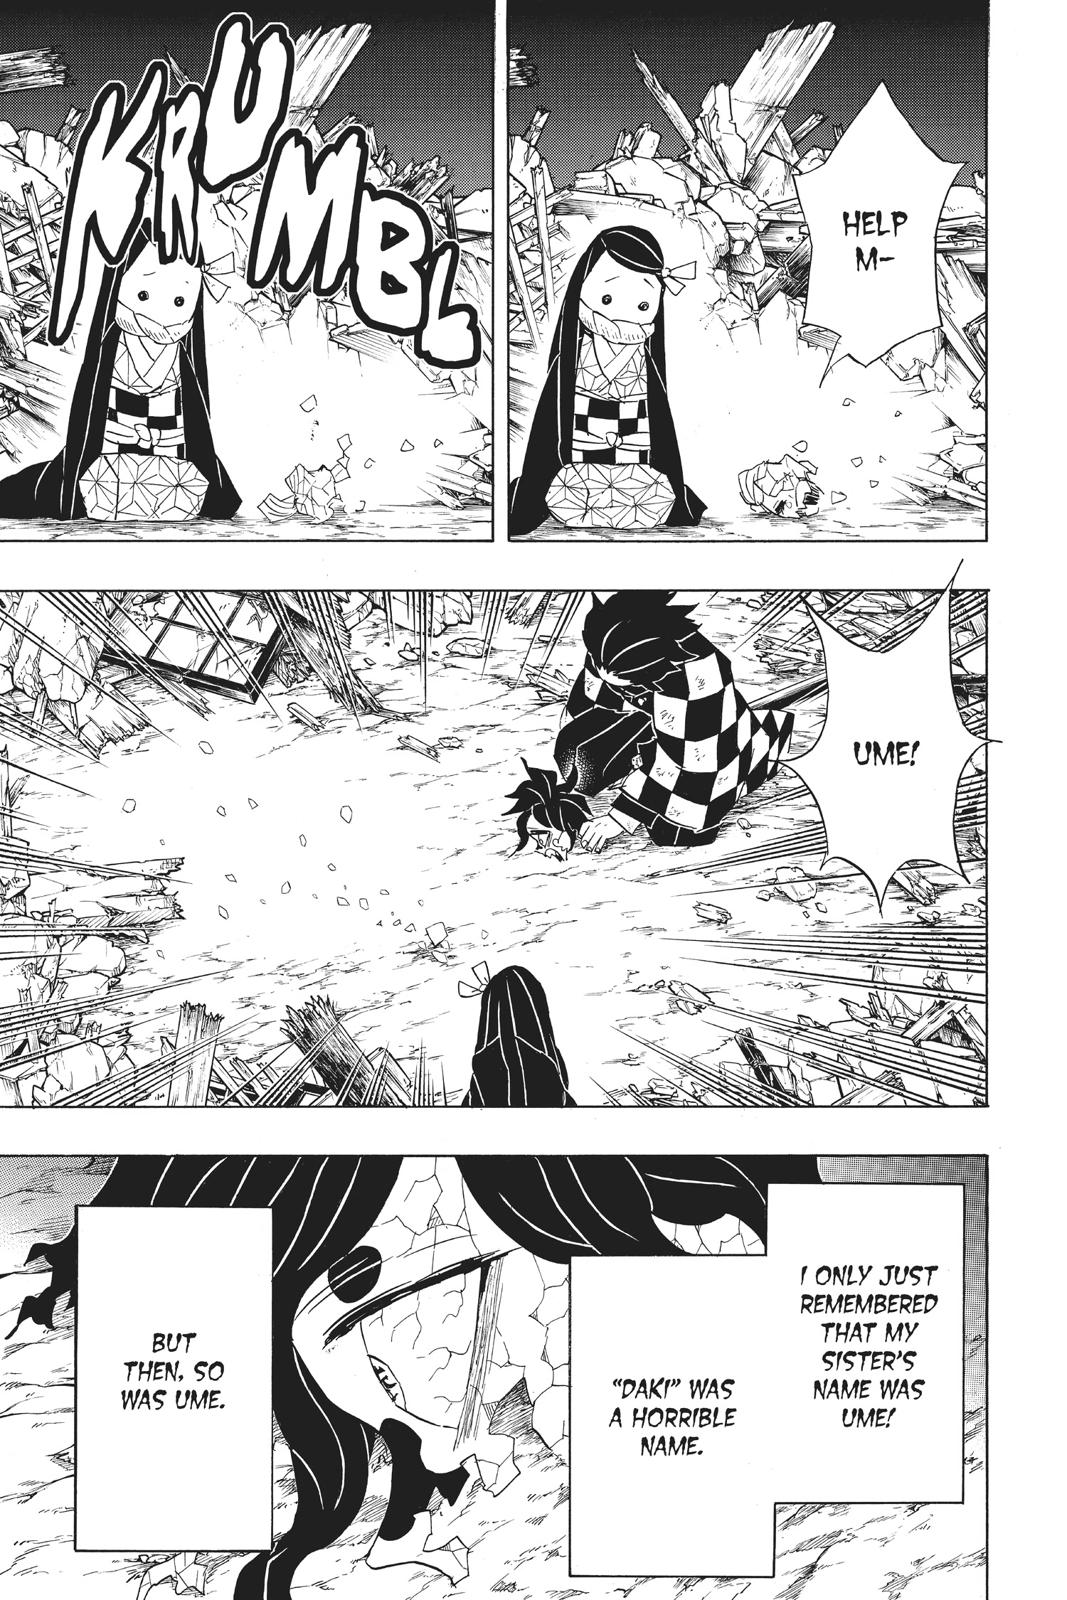 Demon Slayer Manga Manga Chapter - 96 - image 7